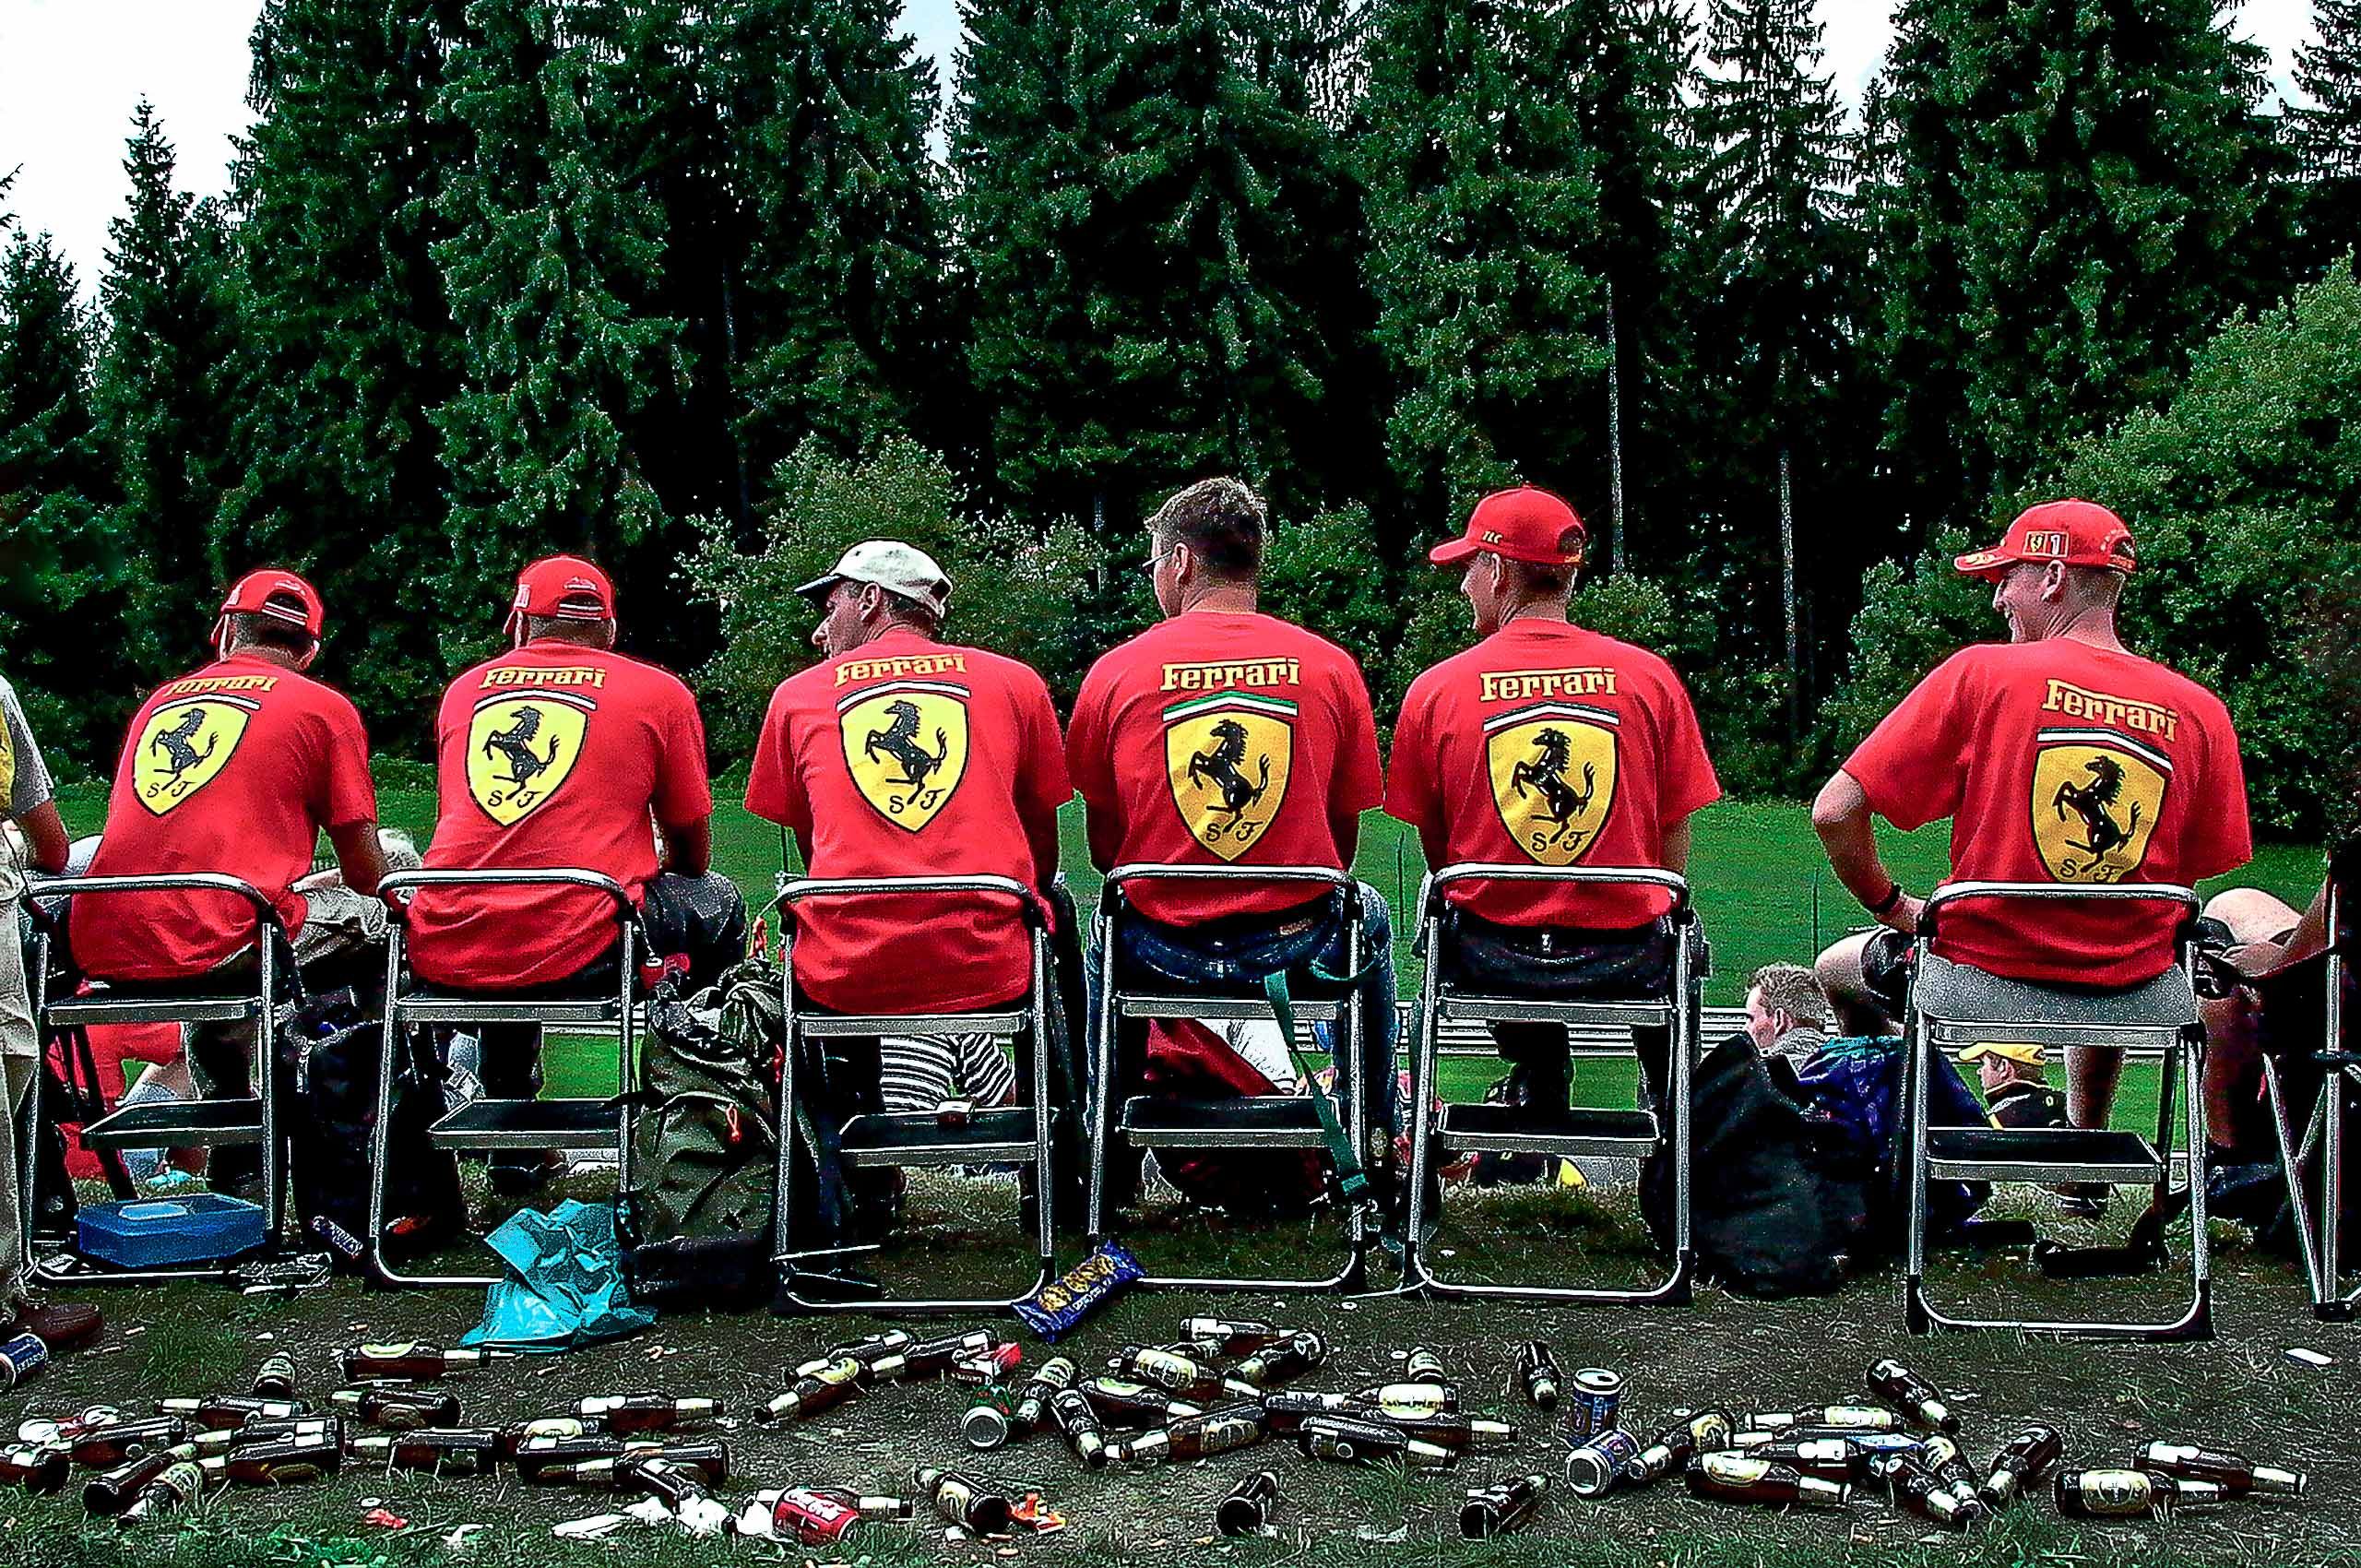 Ferrari Fans at the F1 track, SPA in Belguim